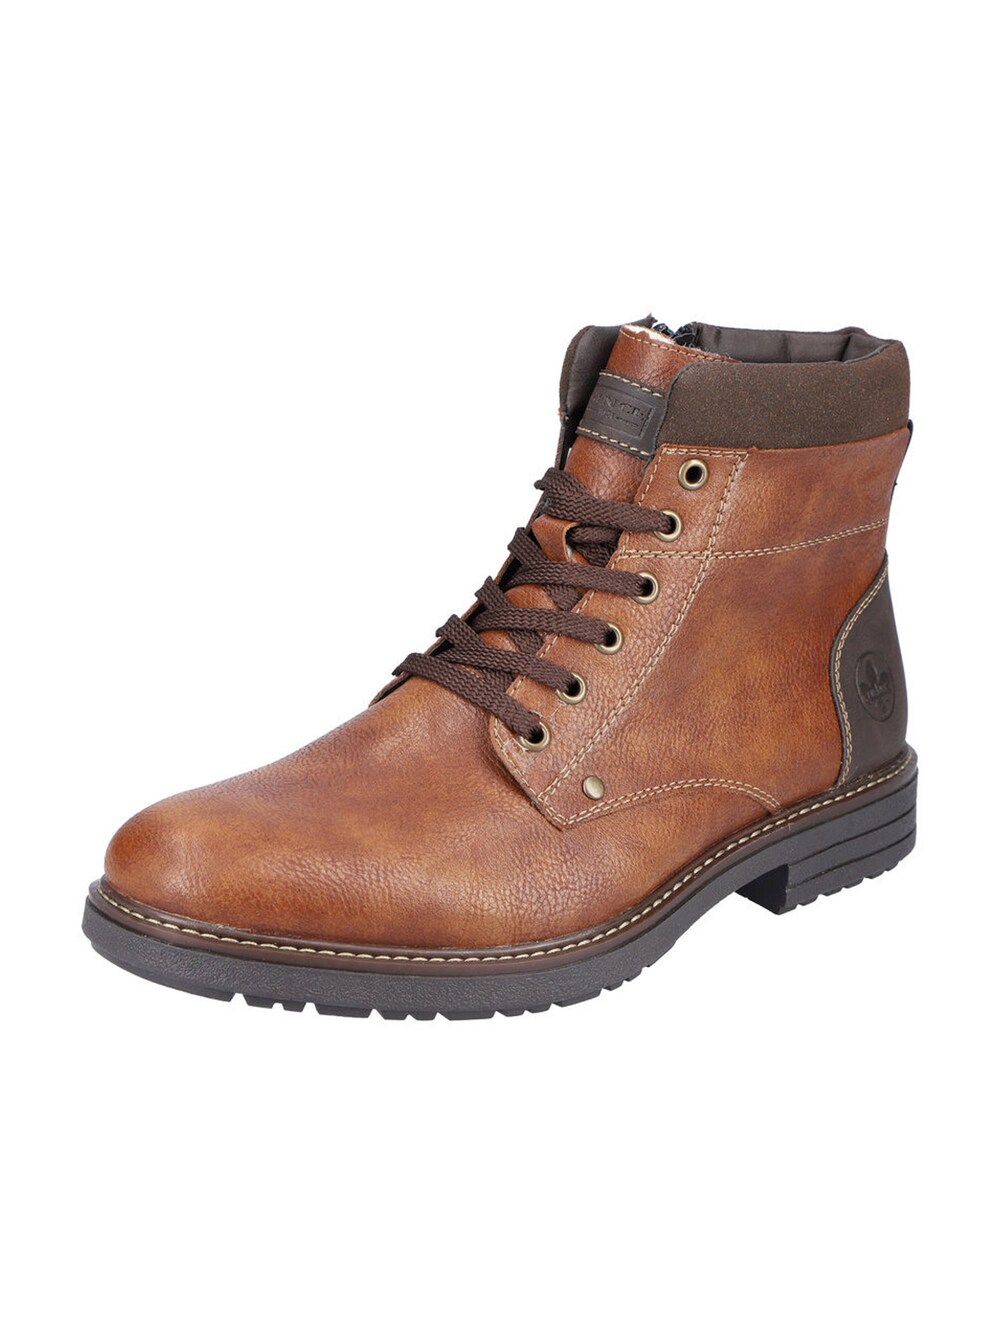 Ботинки на шнуровке Rieker, коричневый/каштановый ботинки на молнии и шнуровке 39 каштановый